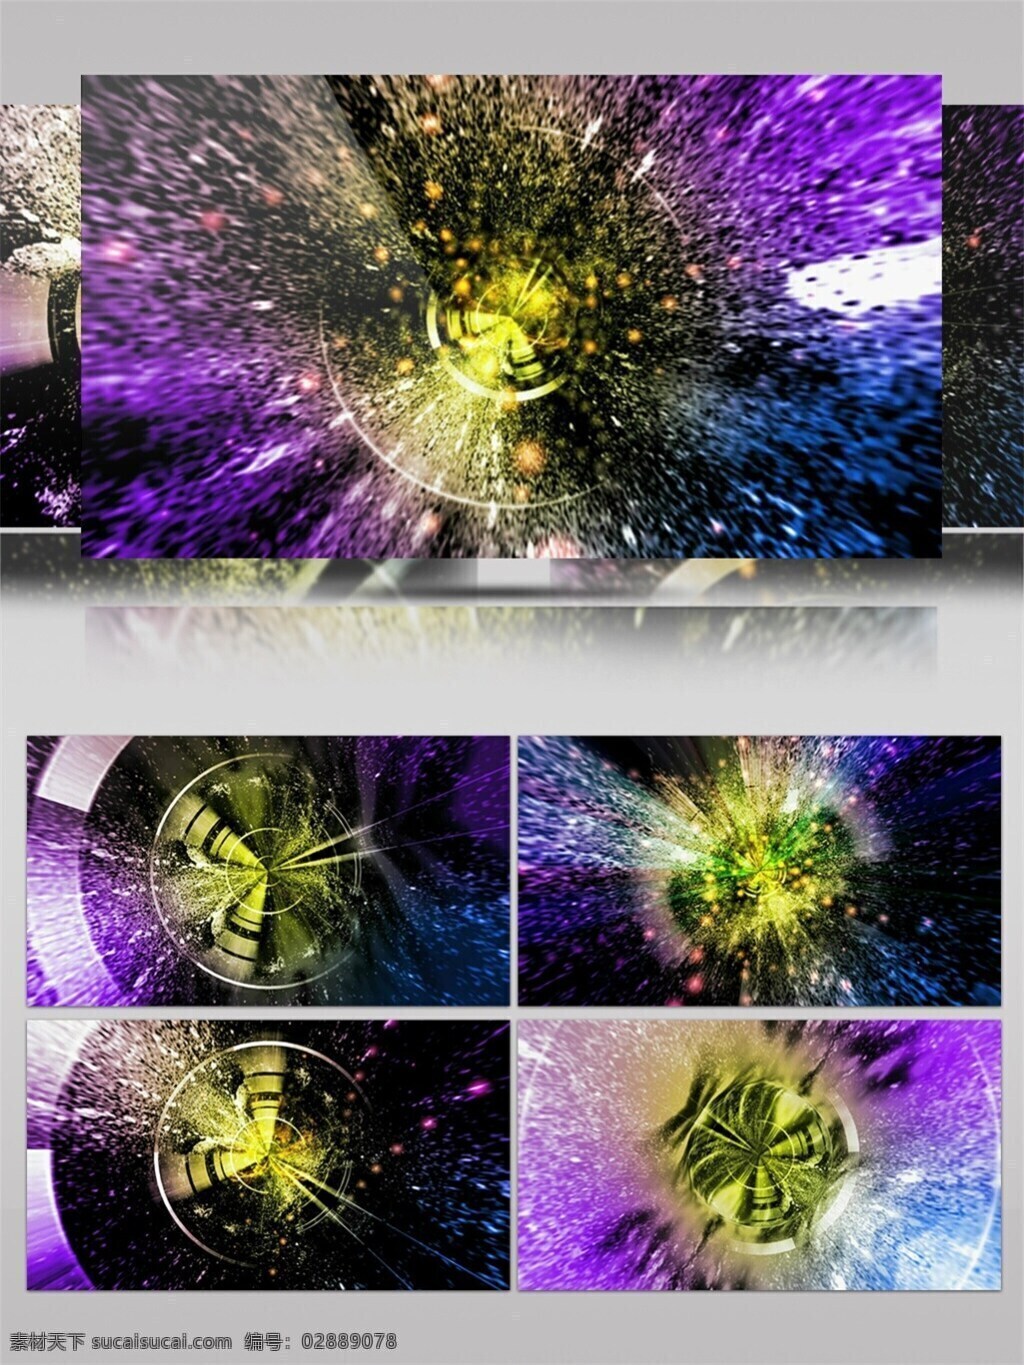 门 馆 银河 高清 视频 vj灯光 壁纸图案 动态展示 背景 立体几何 梦幻空间 特效 银河粒子 装饰风格